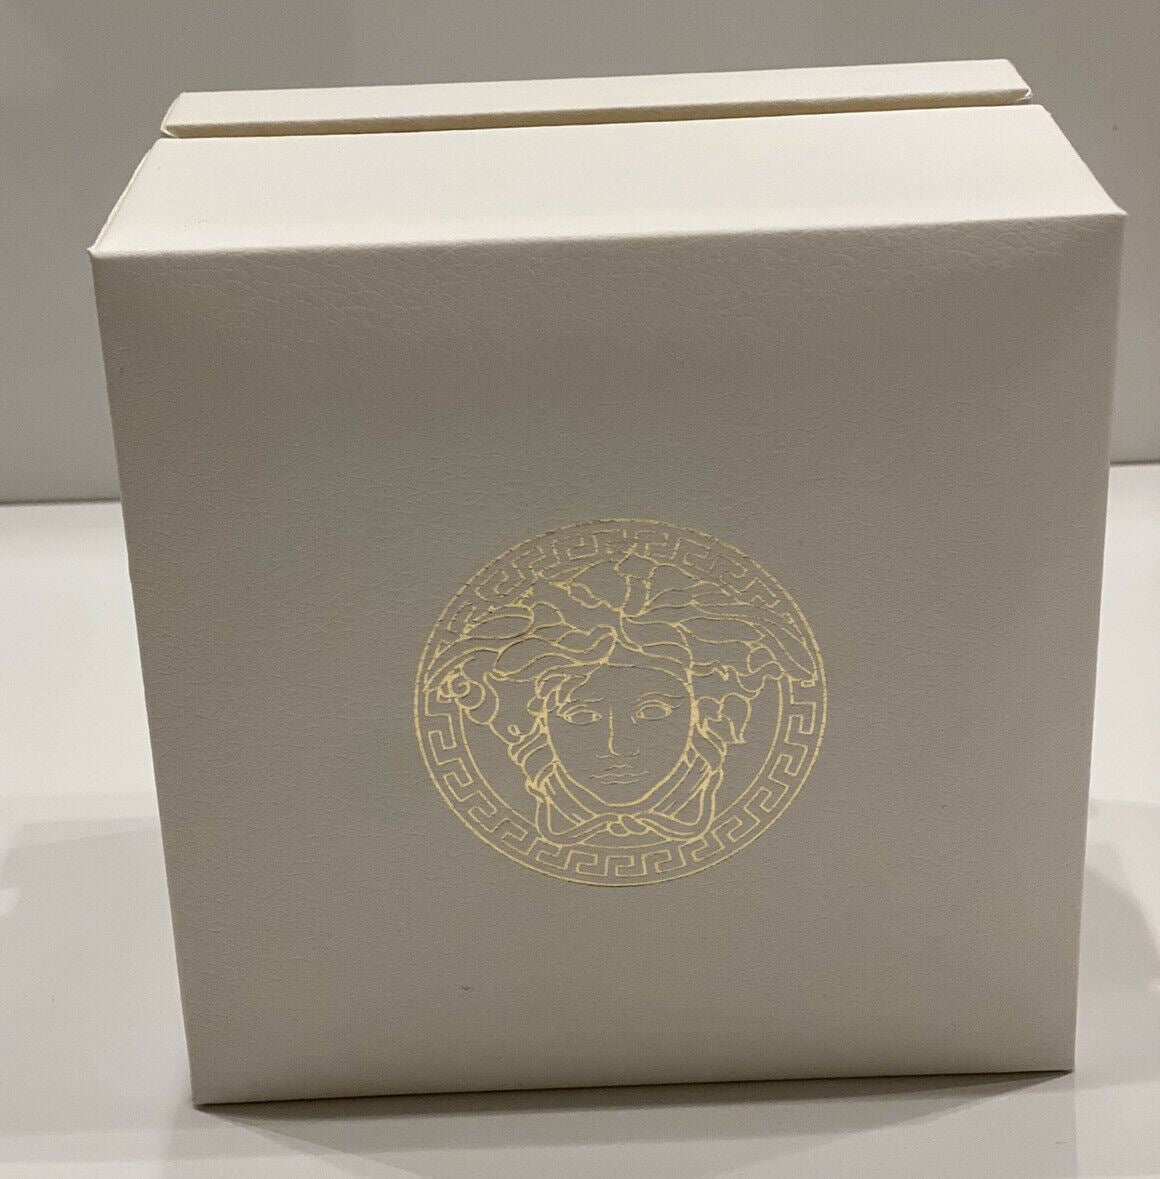 NIB 1295 $ Versace Damenuhr mit Edelstahl- und Lederarmband 